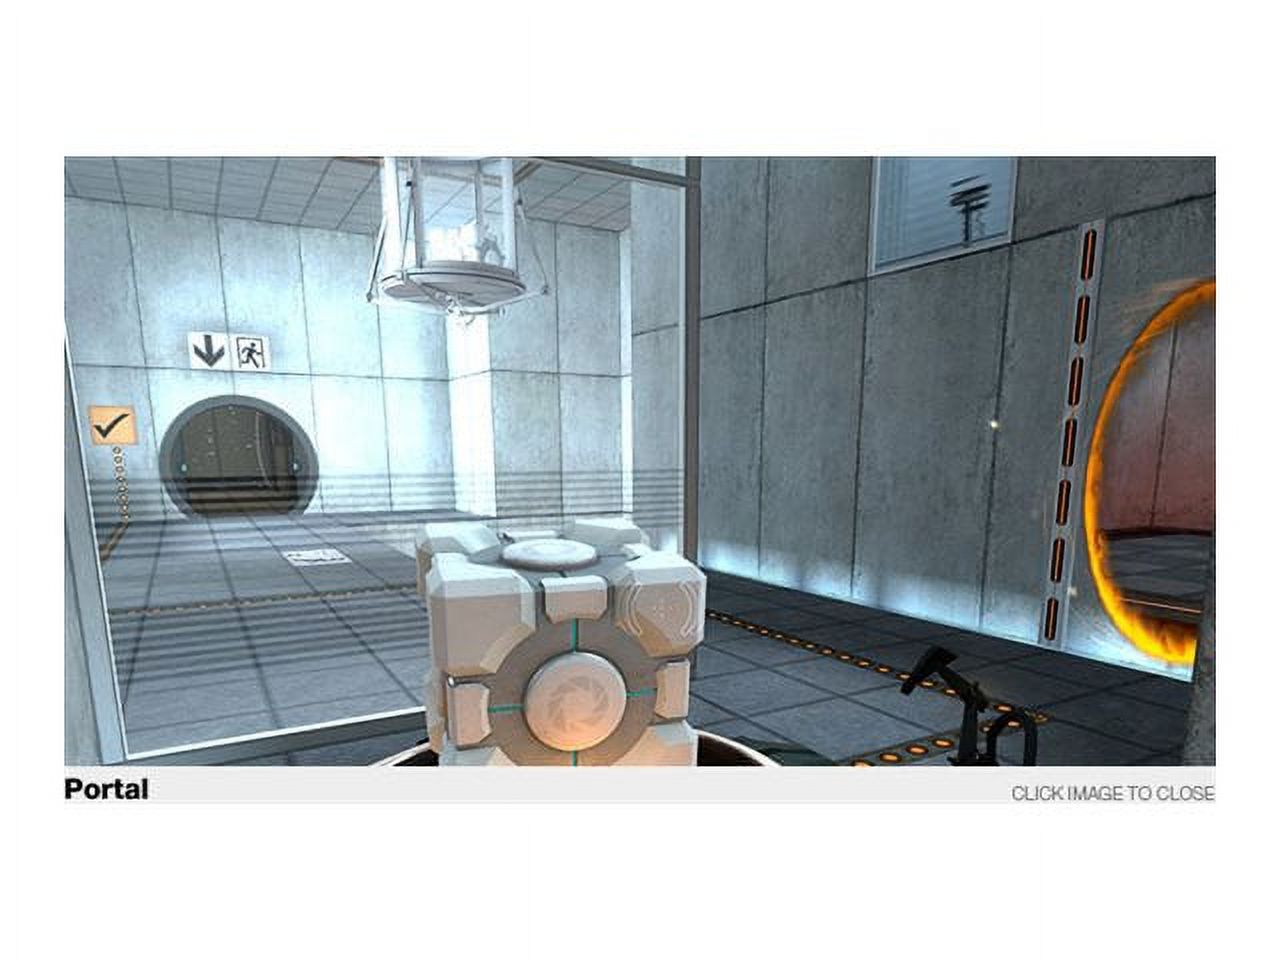 EA Portal 2 - image 3 of 9